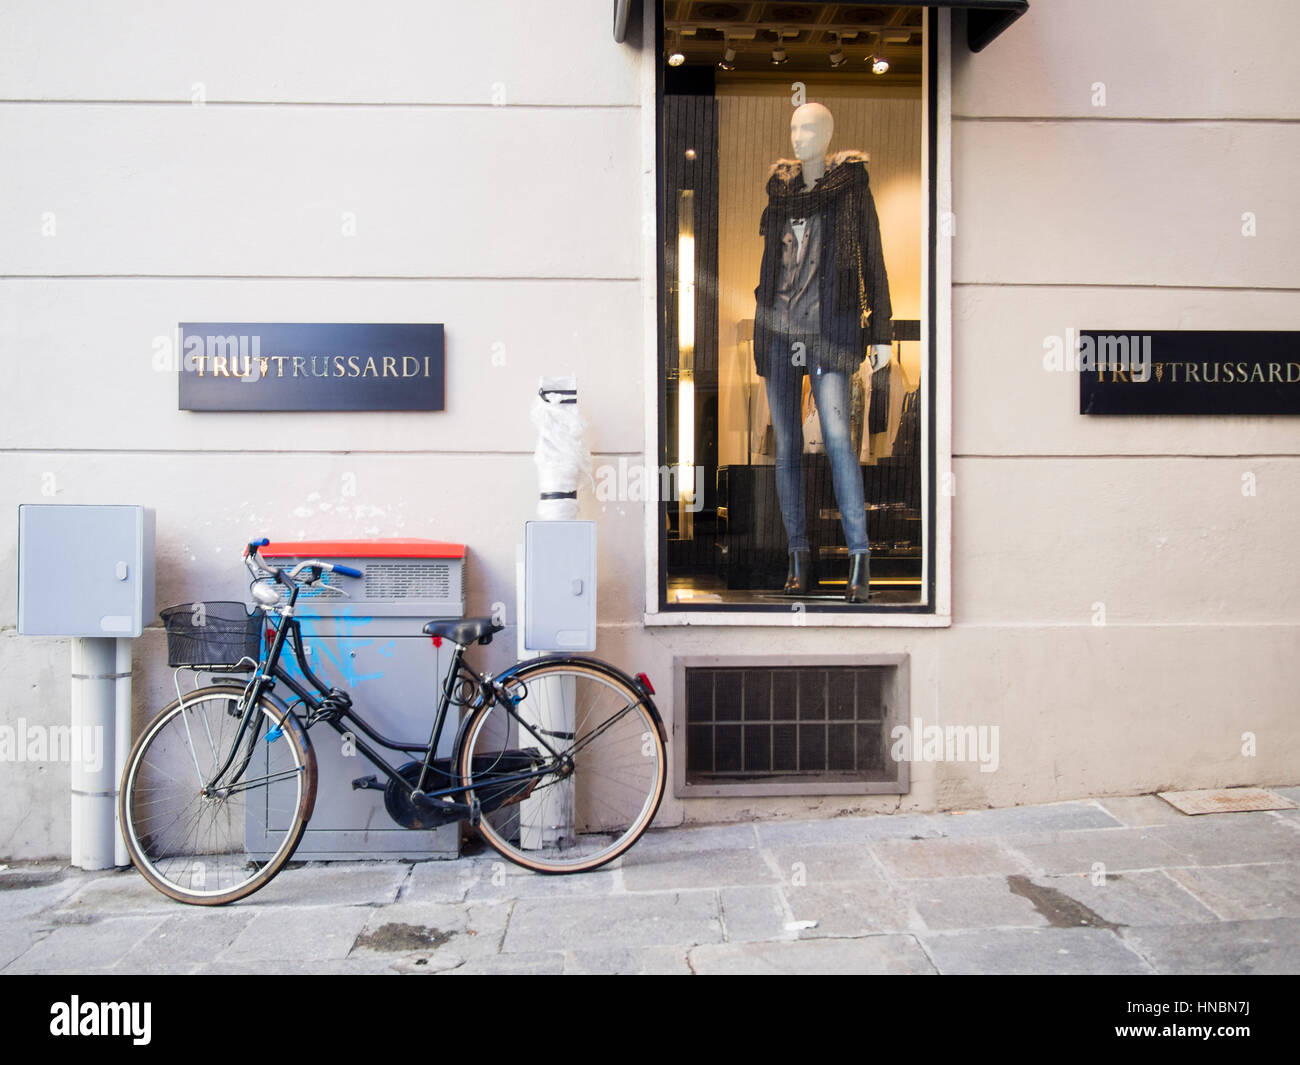 Trussardi negozio di abbigliamento, Parma Italia Foto Stock